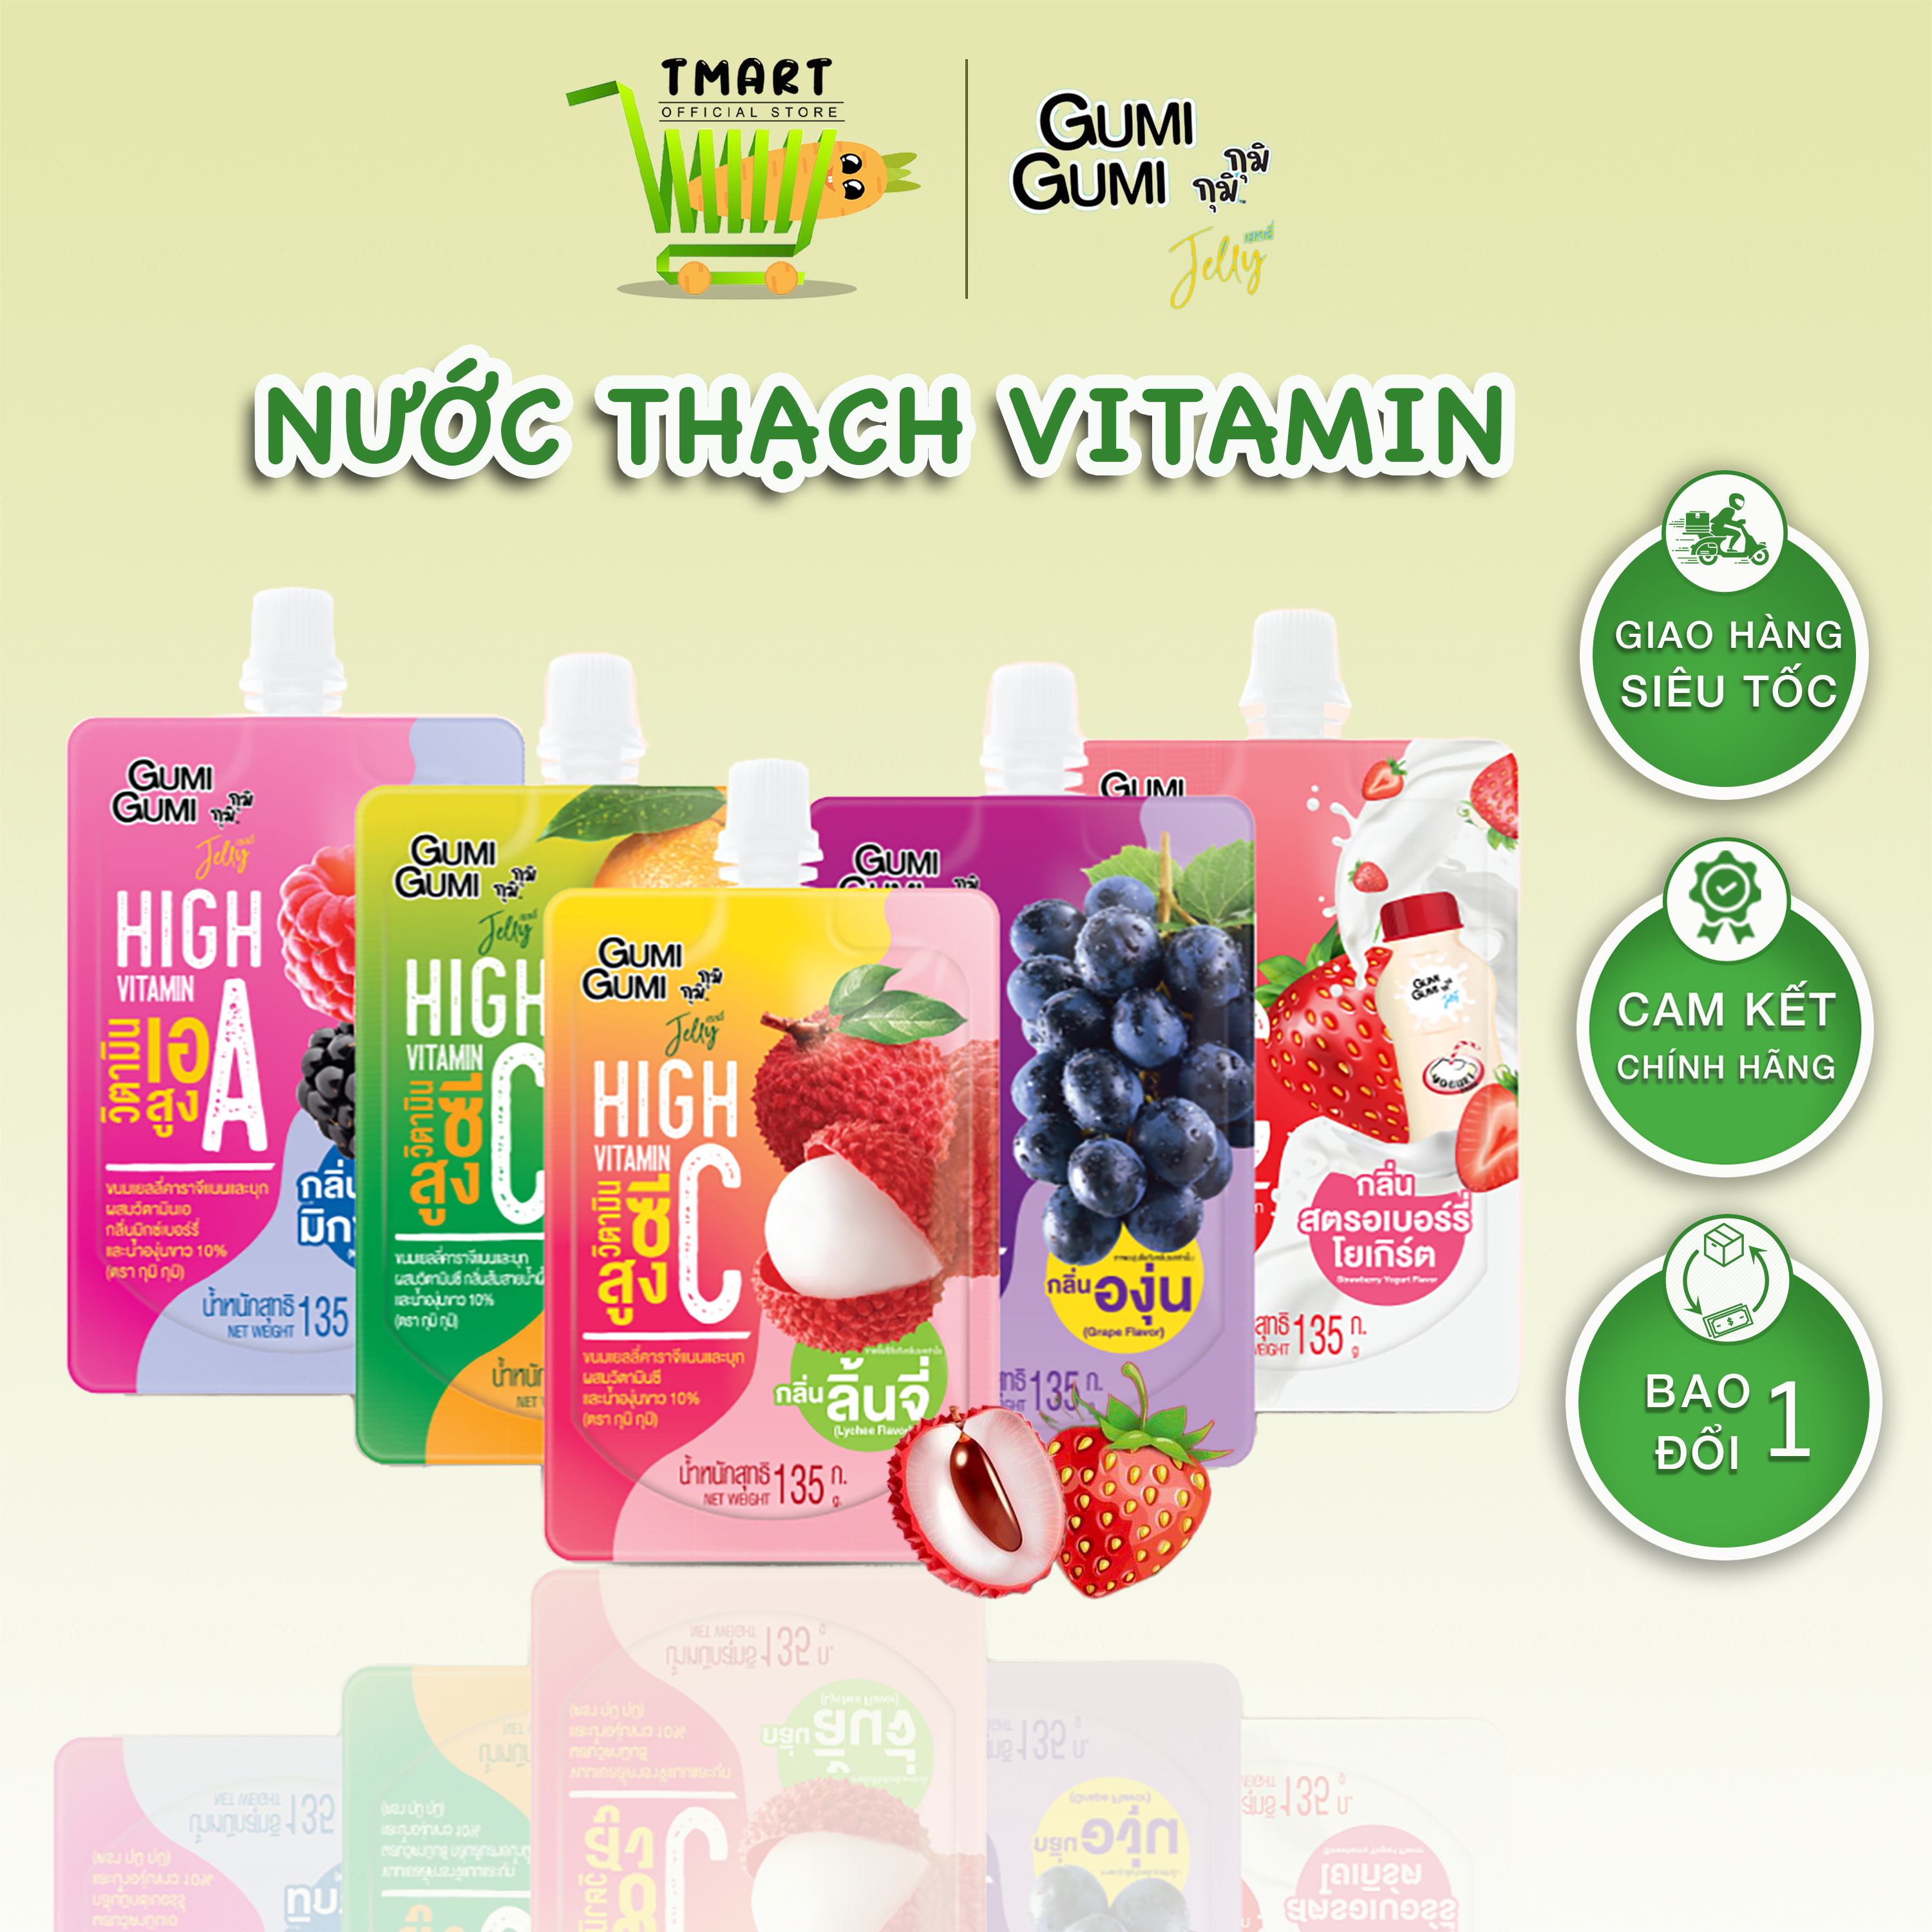 Nước Thạch Vitamin Jelly Gumi Gumi Thái Lan Các Vị Túi 135g